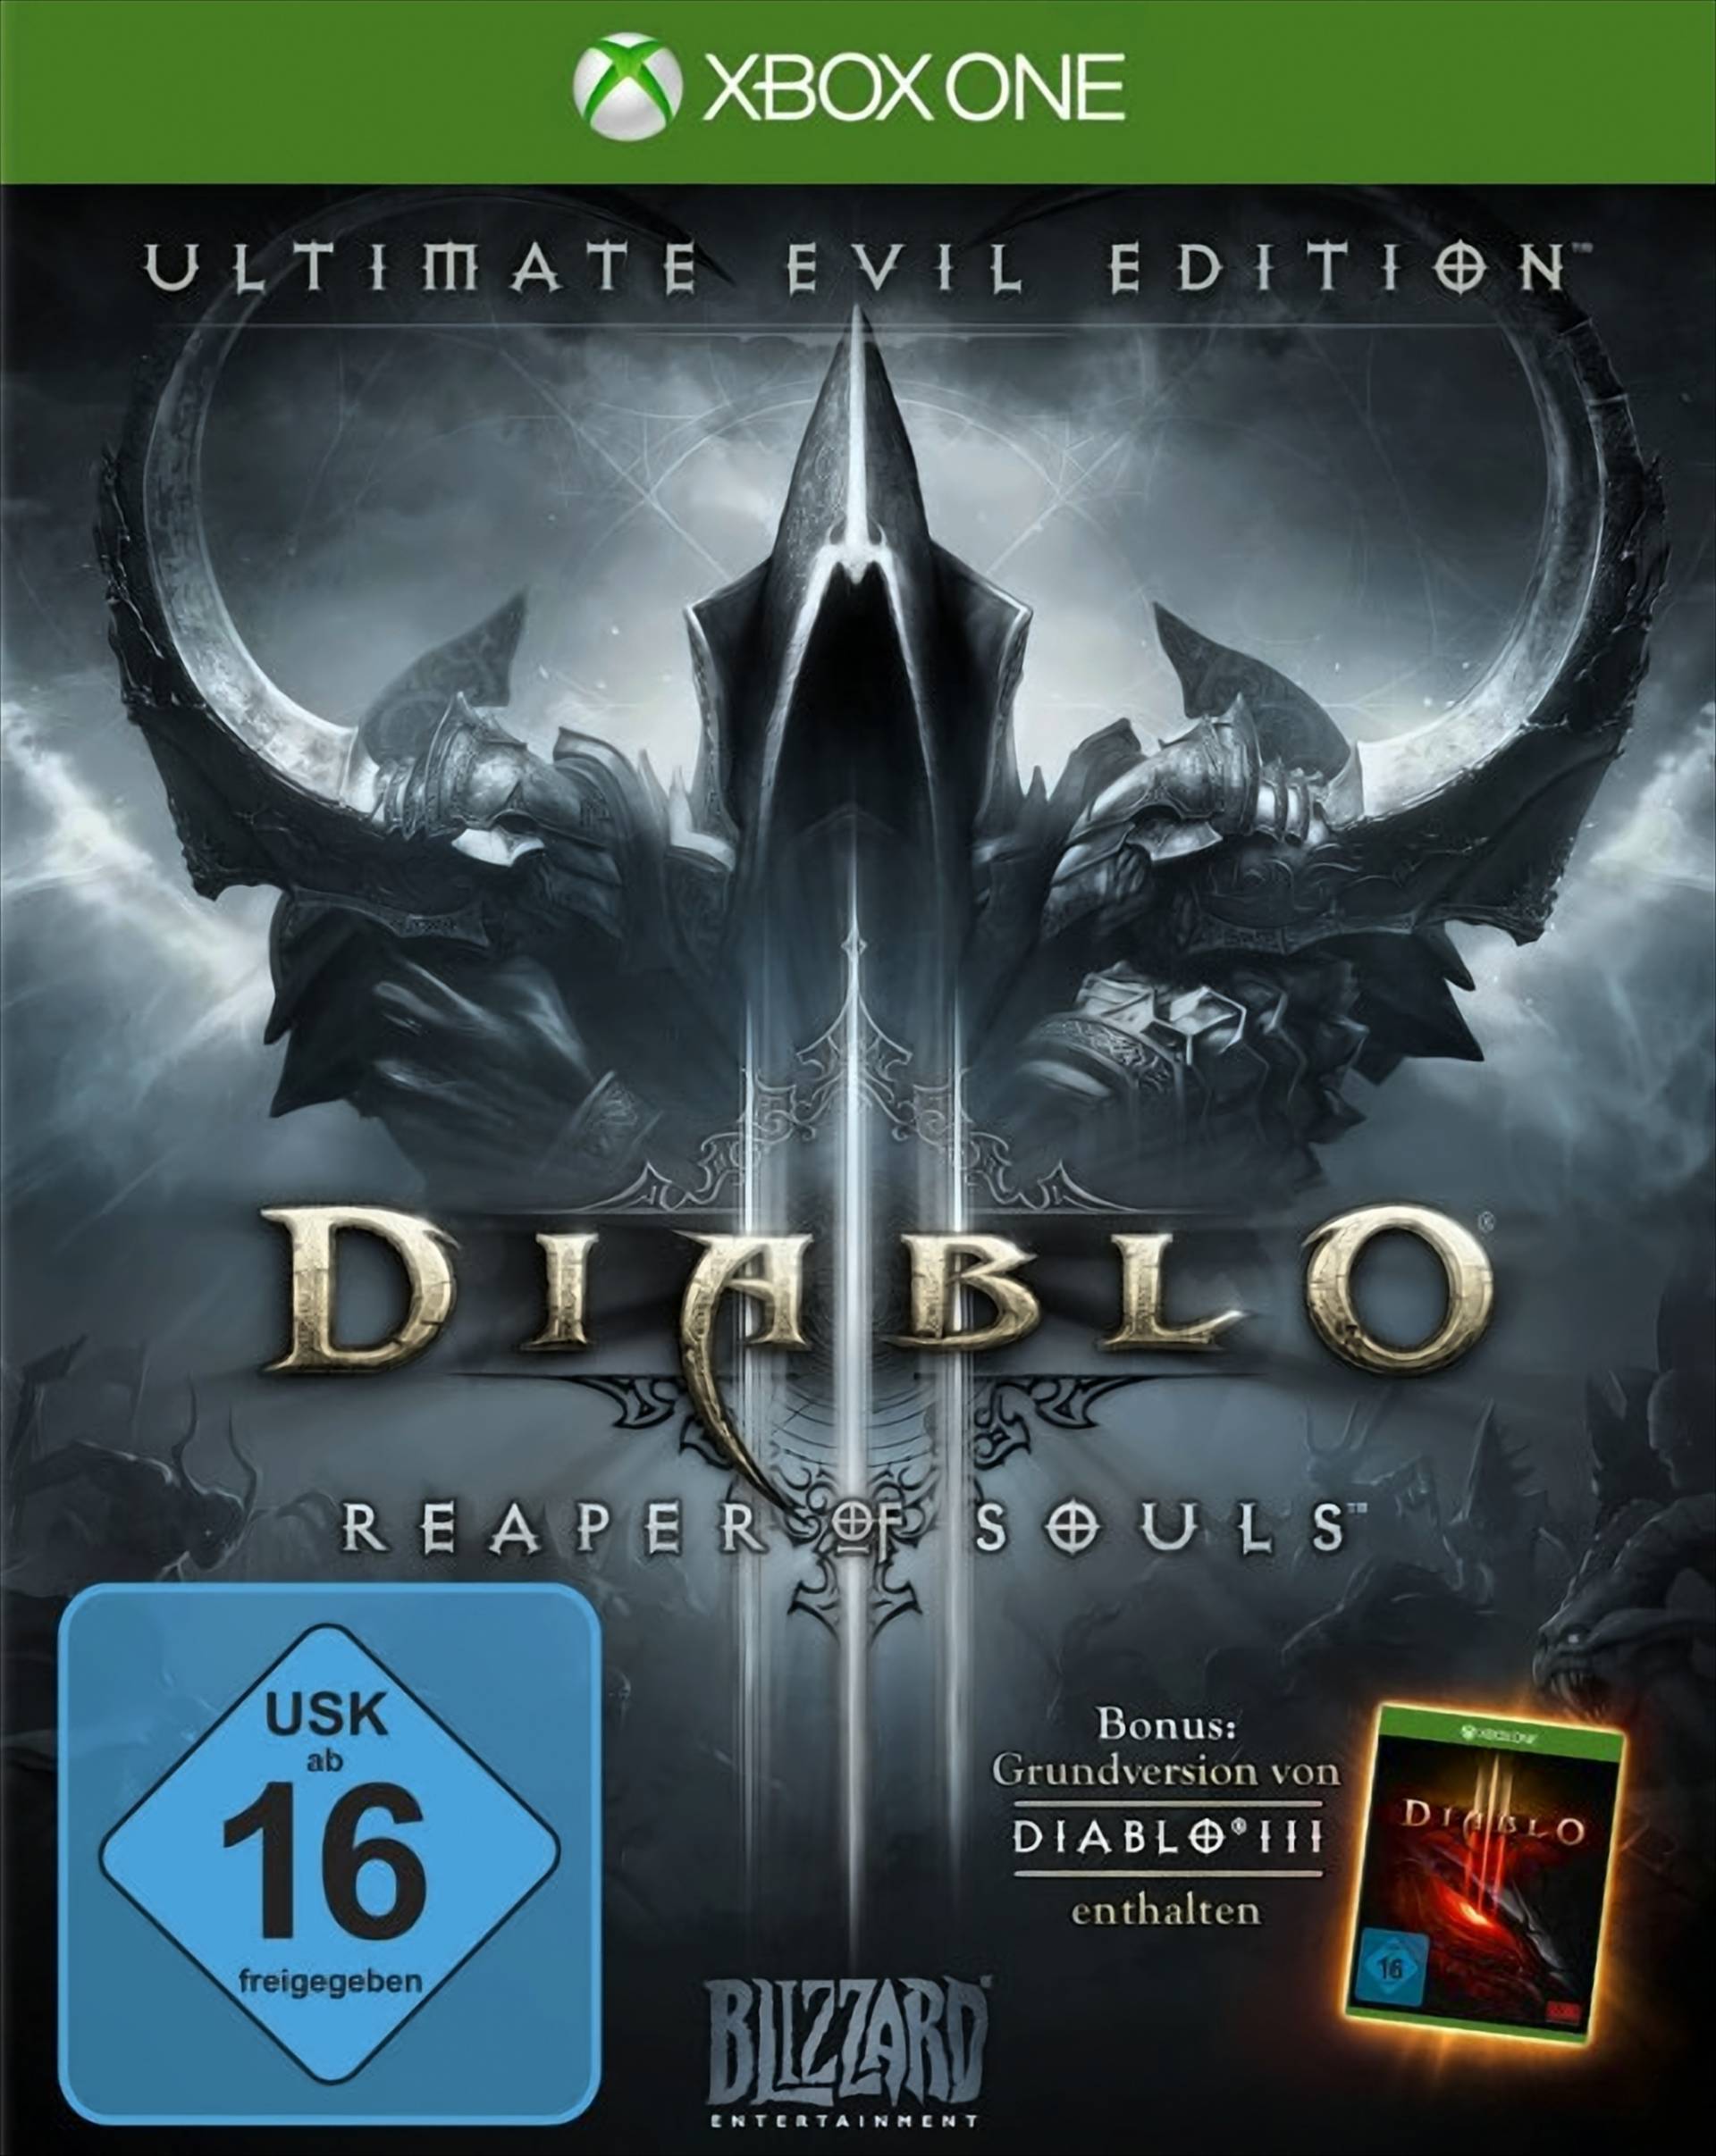 Diablo III - Reaper Of Souls (Ultimate Evil Edition) von Blizzard Entertainment